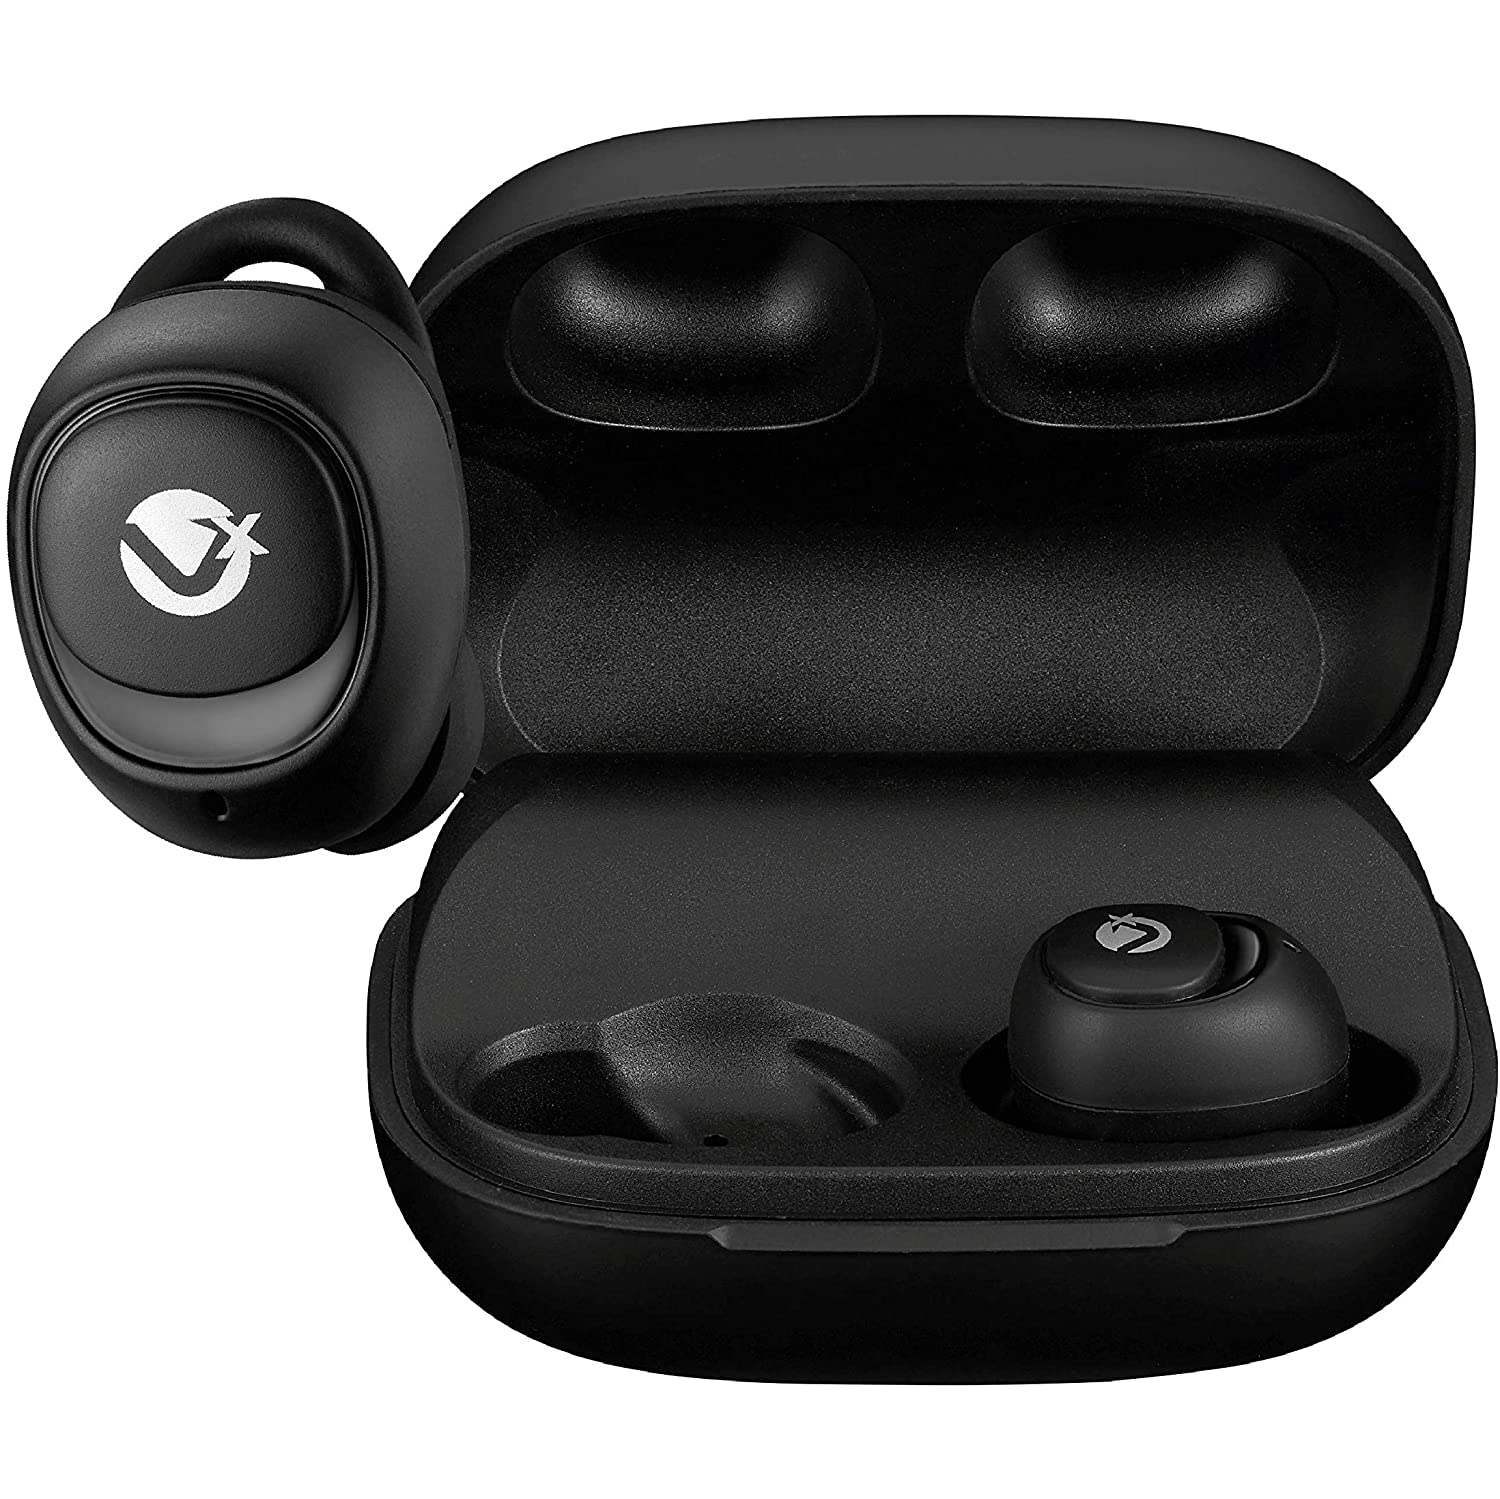 VolkanoX Astral Series True Wireless Earphones with Powerbank Charging Case